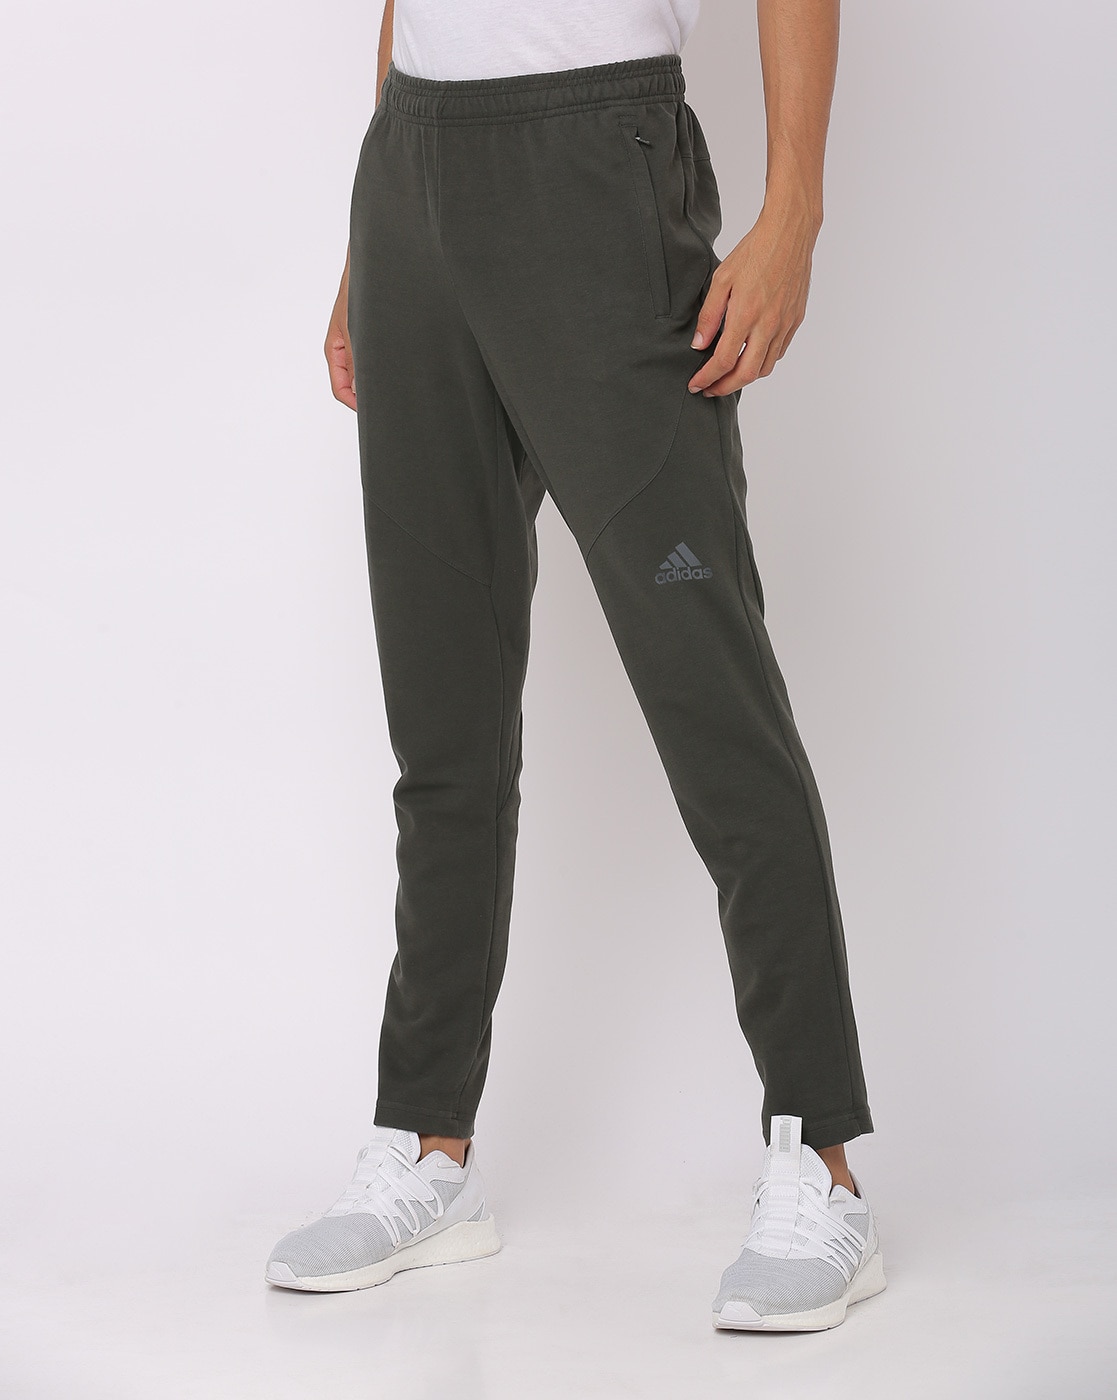 adidas track pants mens zip pockets